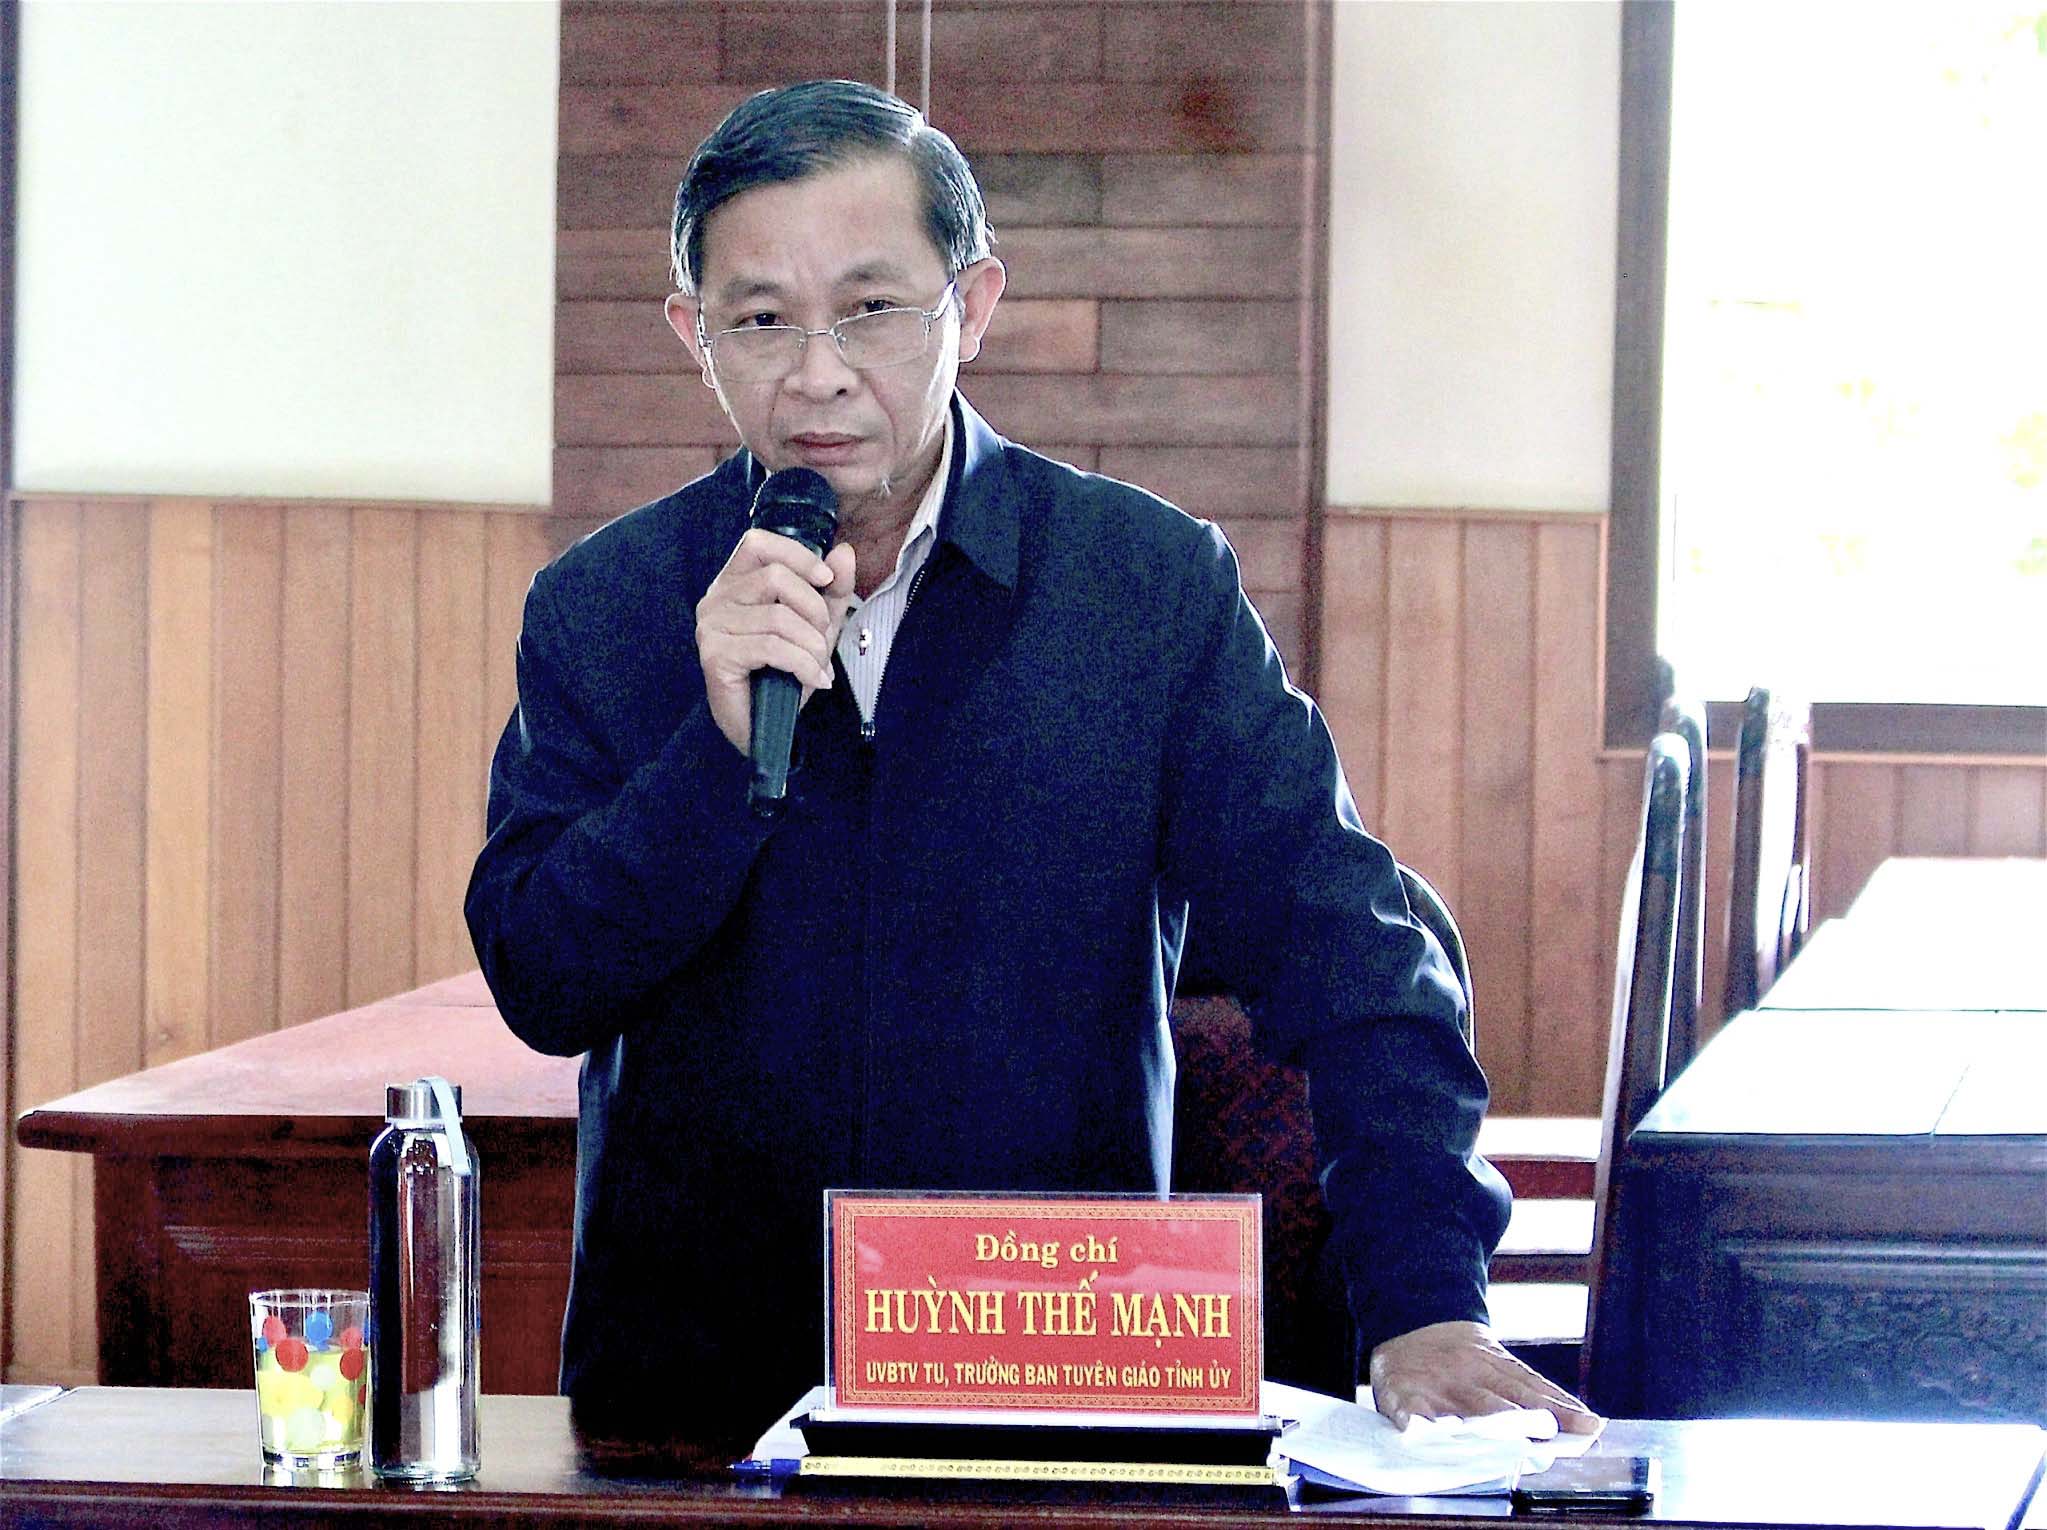 Trưởng ban Tuyên giáo Tỉnh ủy Huỳnh Thế Mạnh nêu ý kiến về chỉ tiêu tỷ lệ người dân tham gia bảo hiểm y tế của huyện năm 2022. Ảnh: Hồng Thi